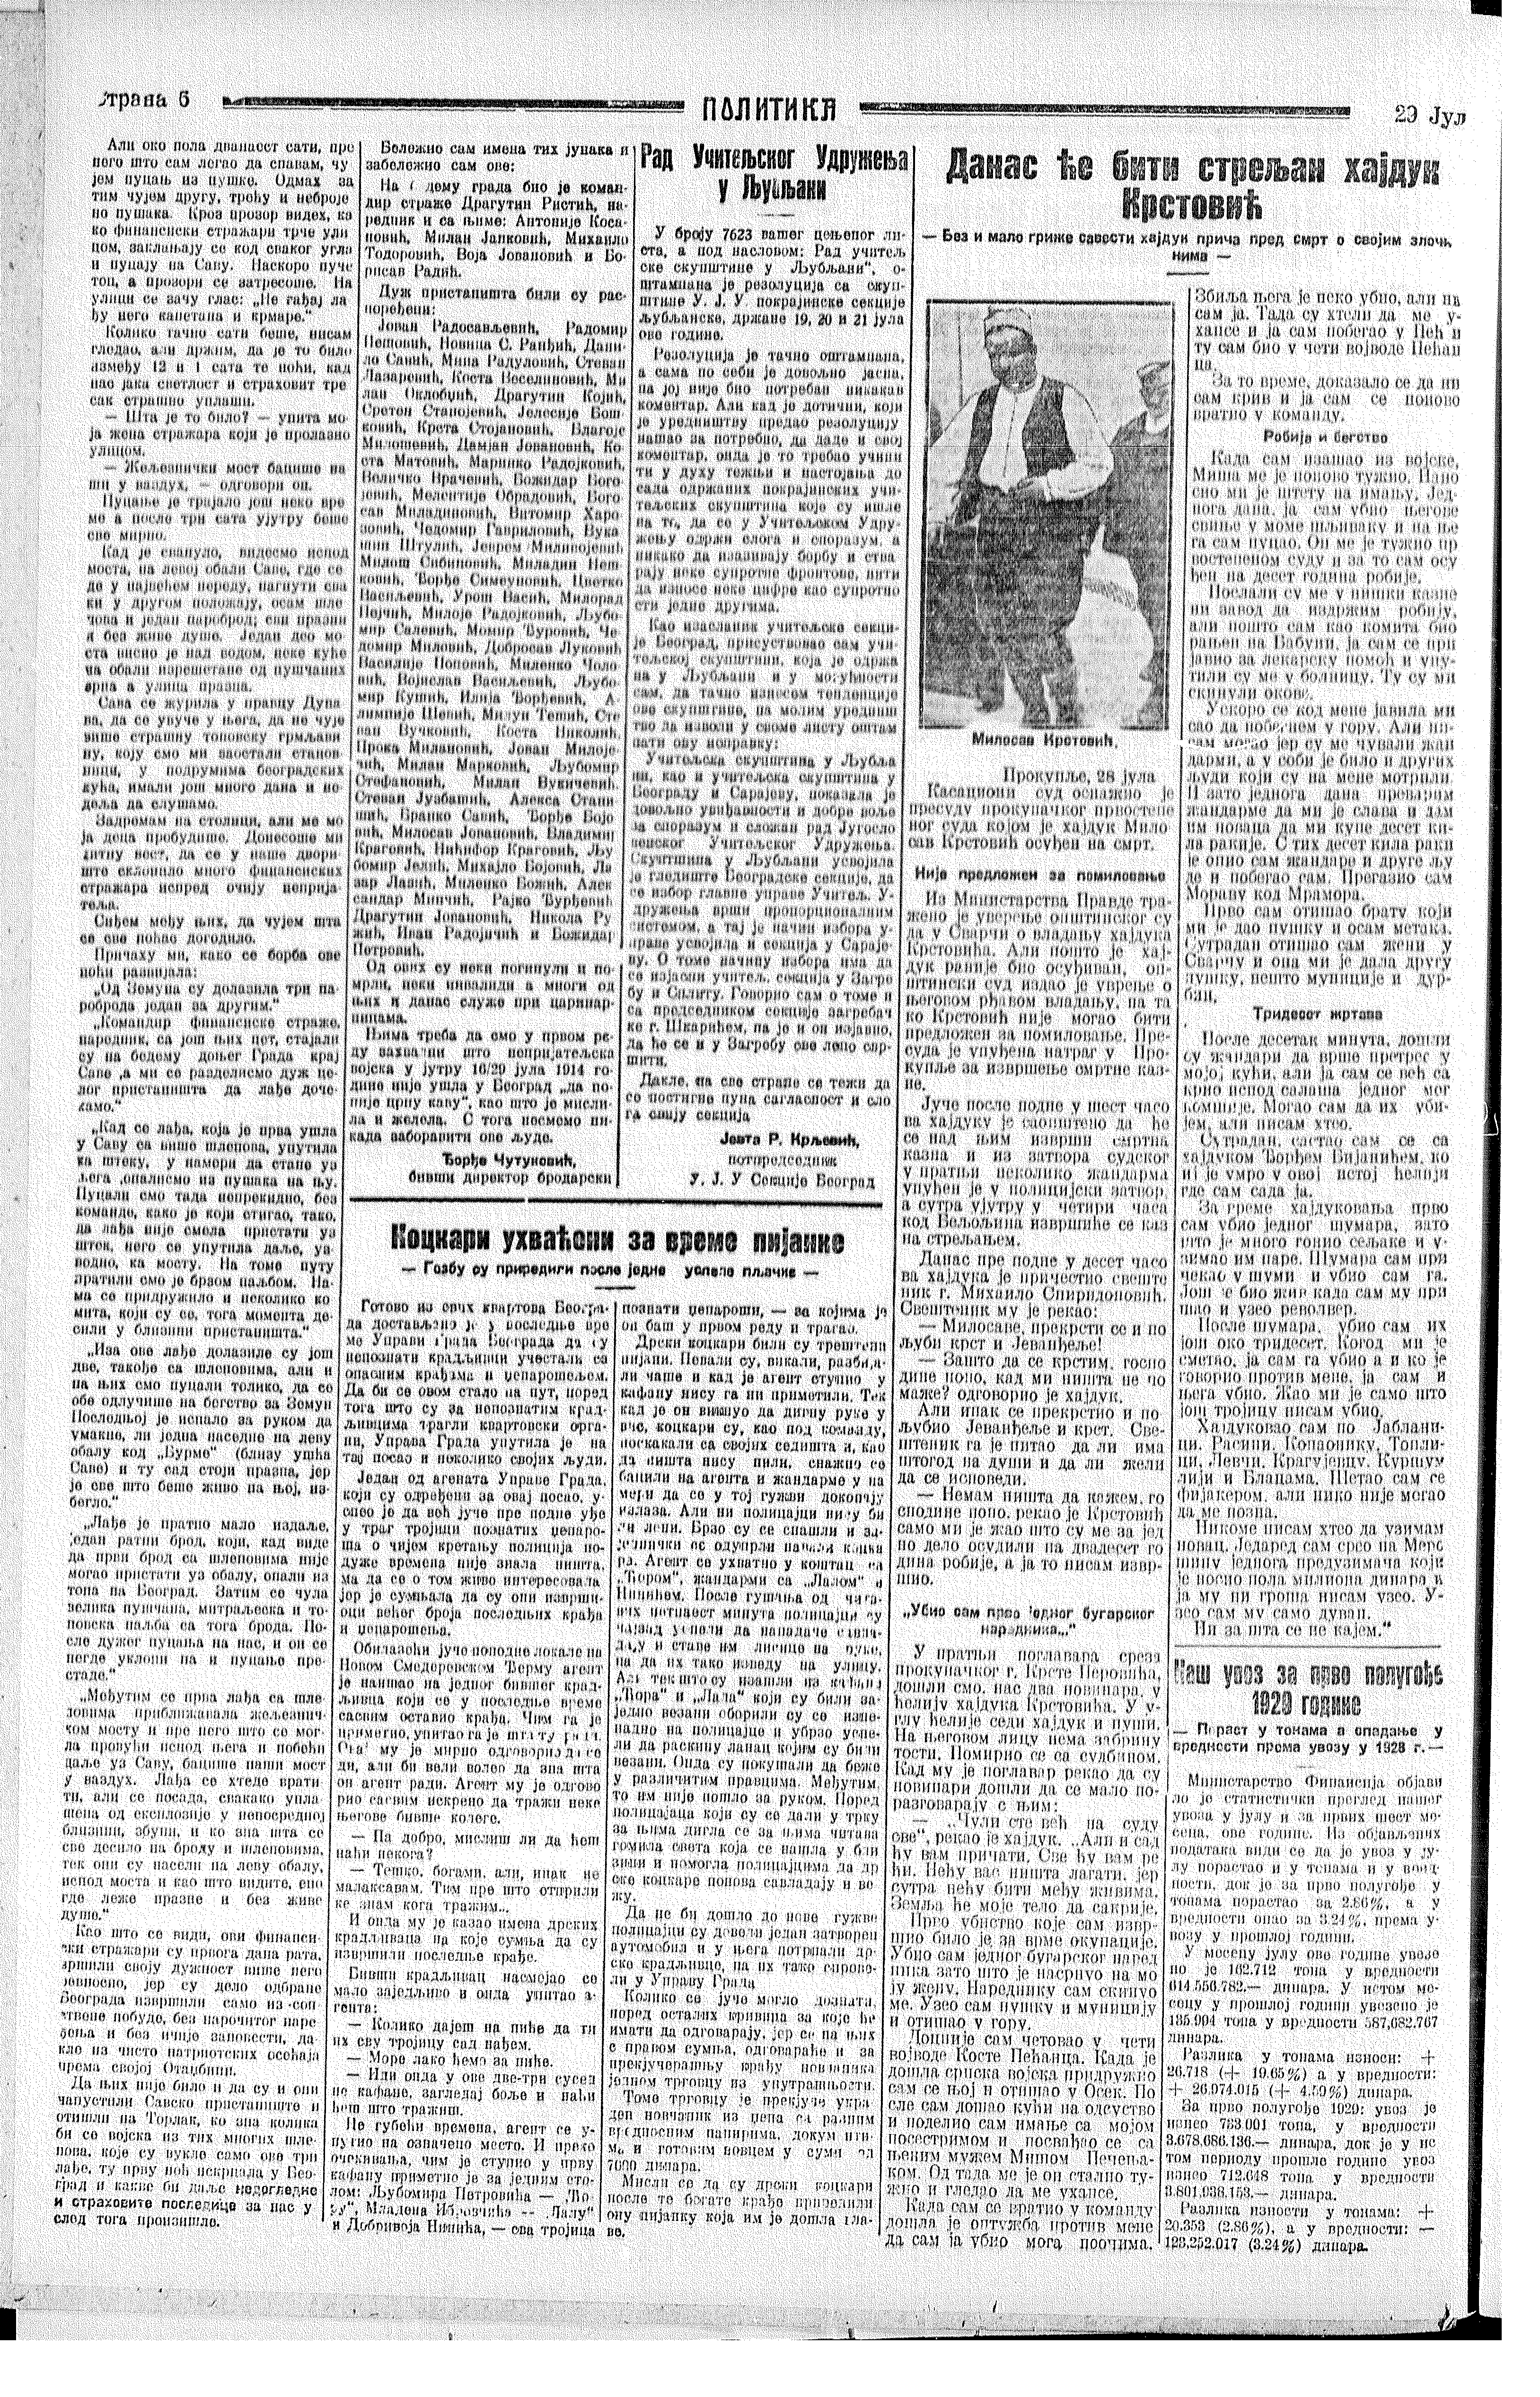 Danas će biti streljan hajduk Krstović, Politika, 23.07.1929.